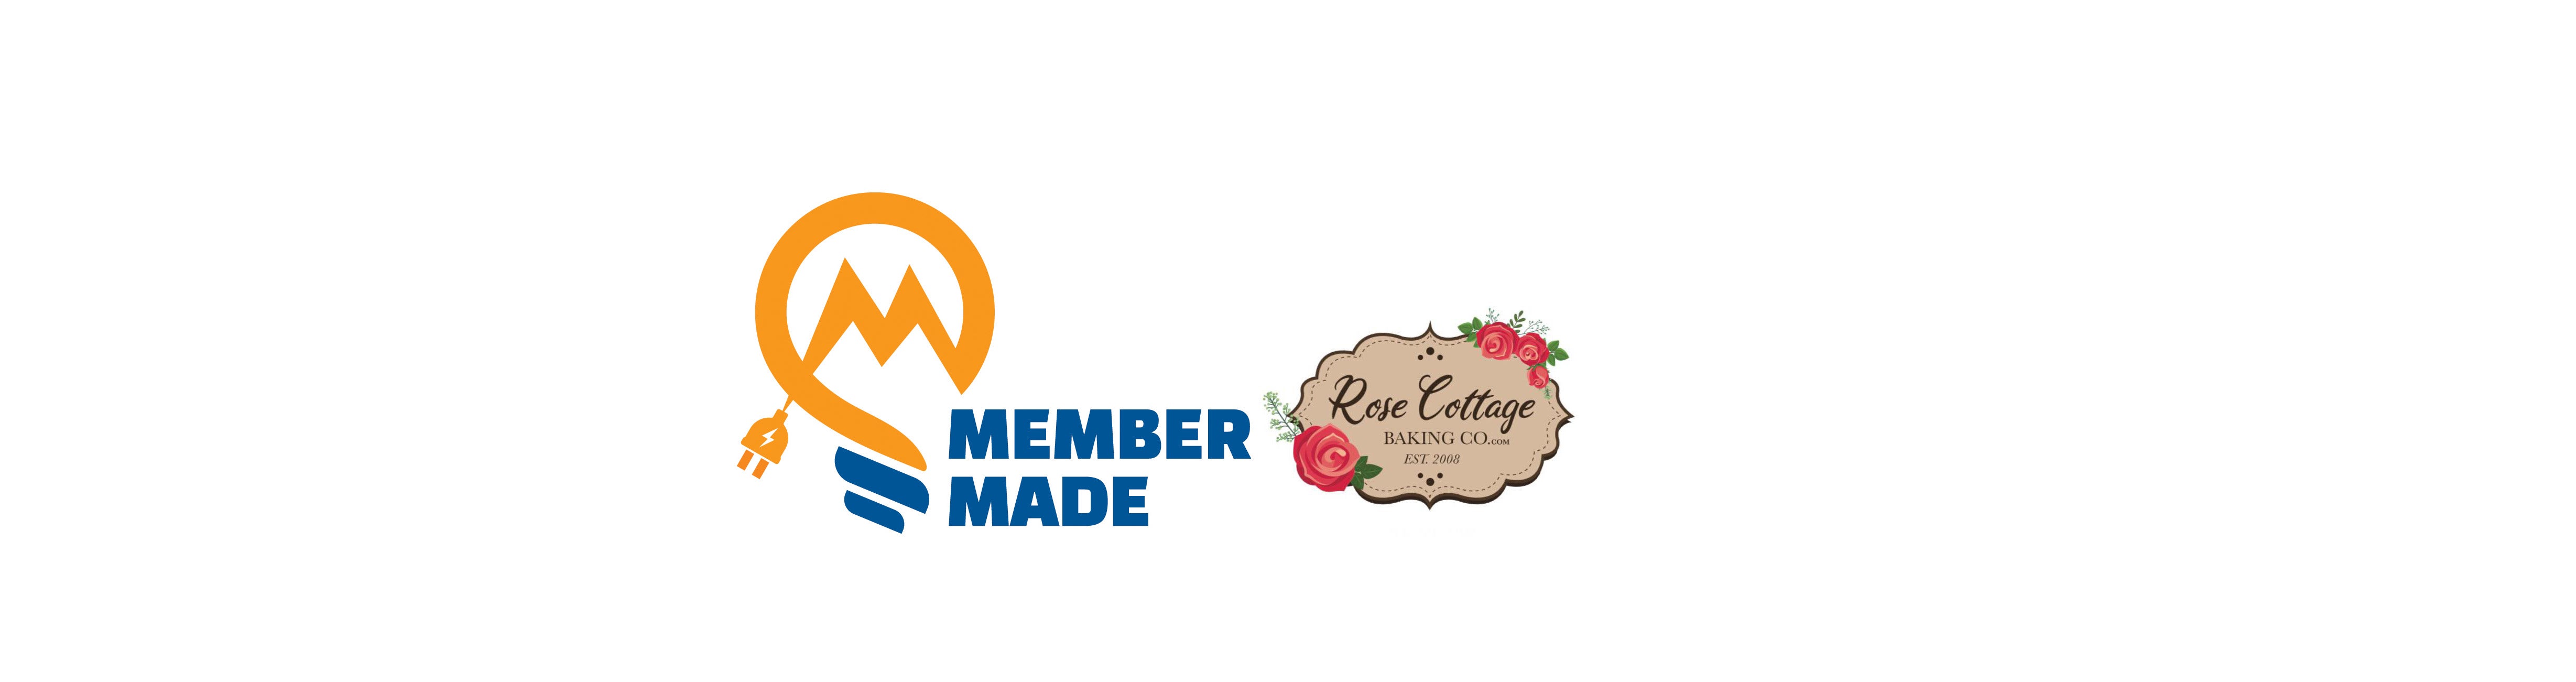 Member Made Rose Cottage logos